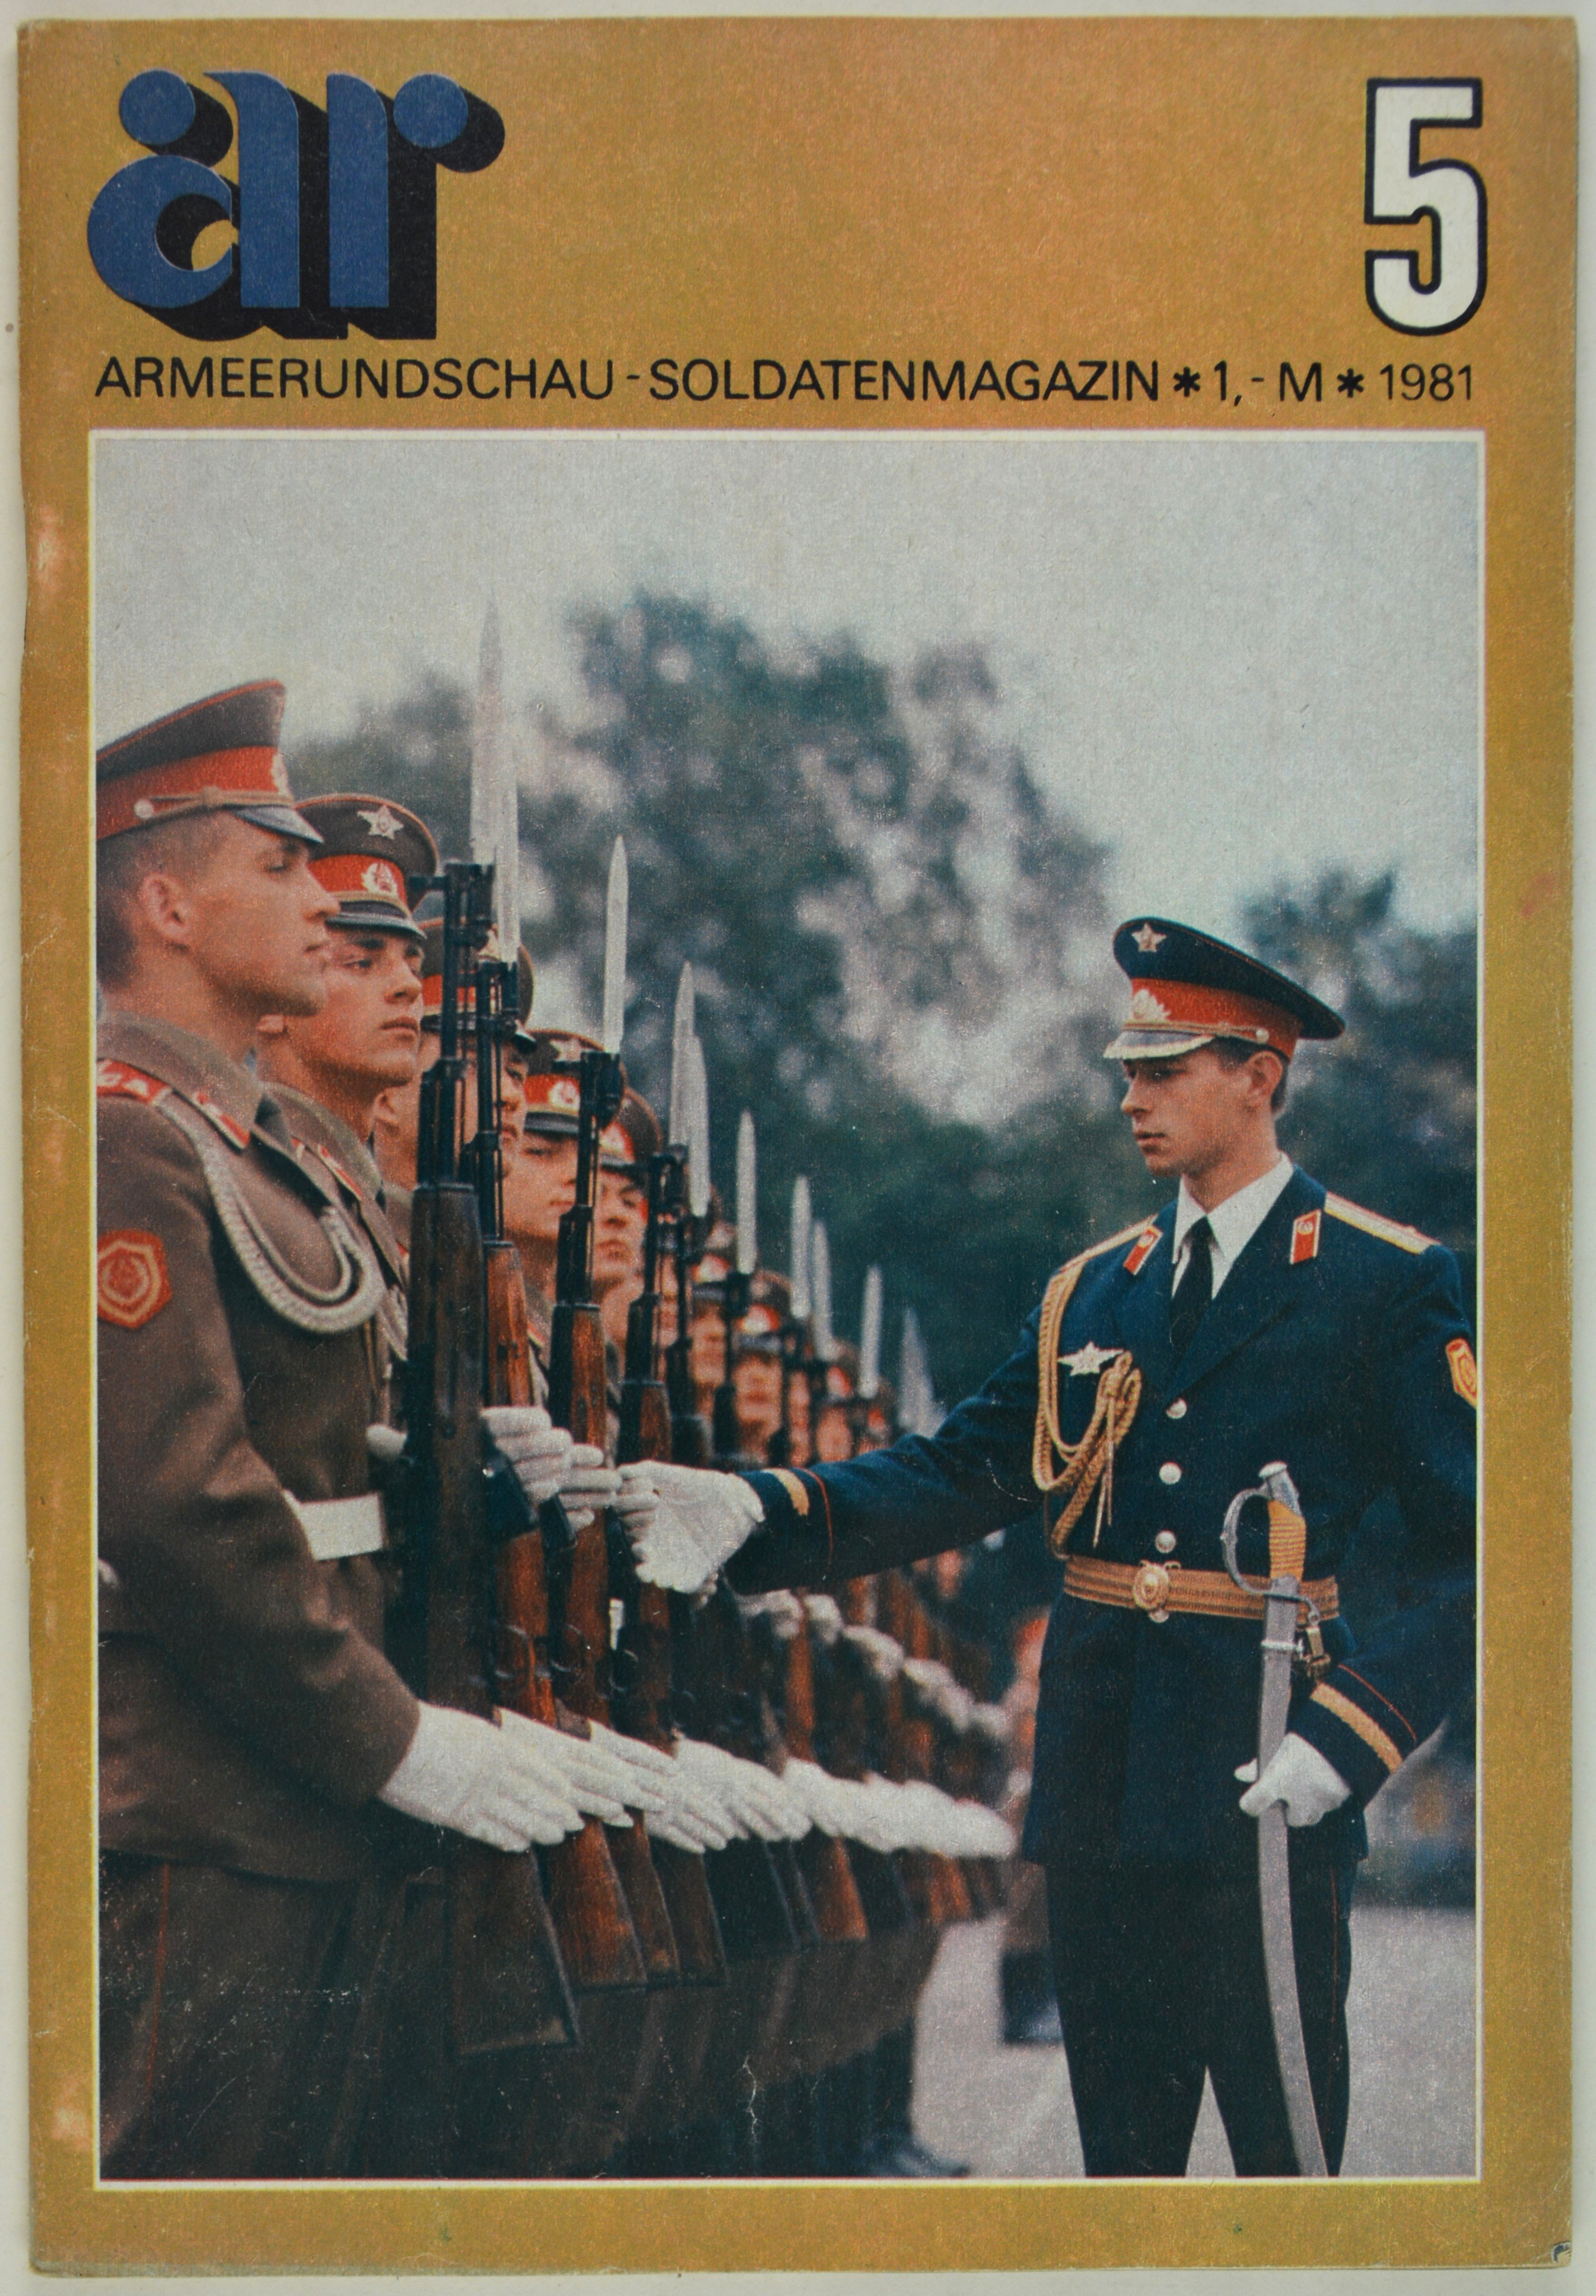 Armeerundschau - Soldatenmagazin (1981), Heft 5 (DDR Geschichtsmuseum im Dokumentationszentrum Perleberg CC BY-SA)